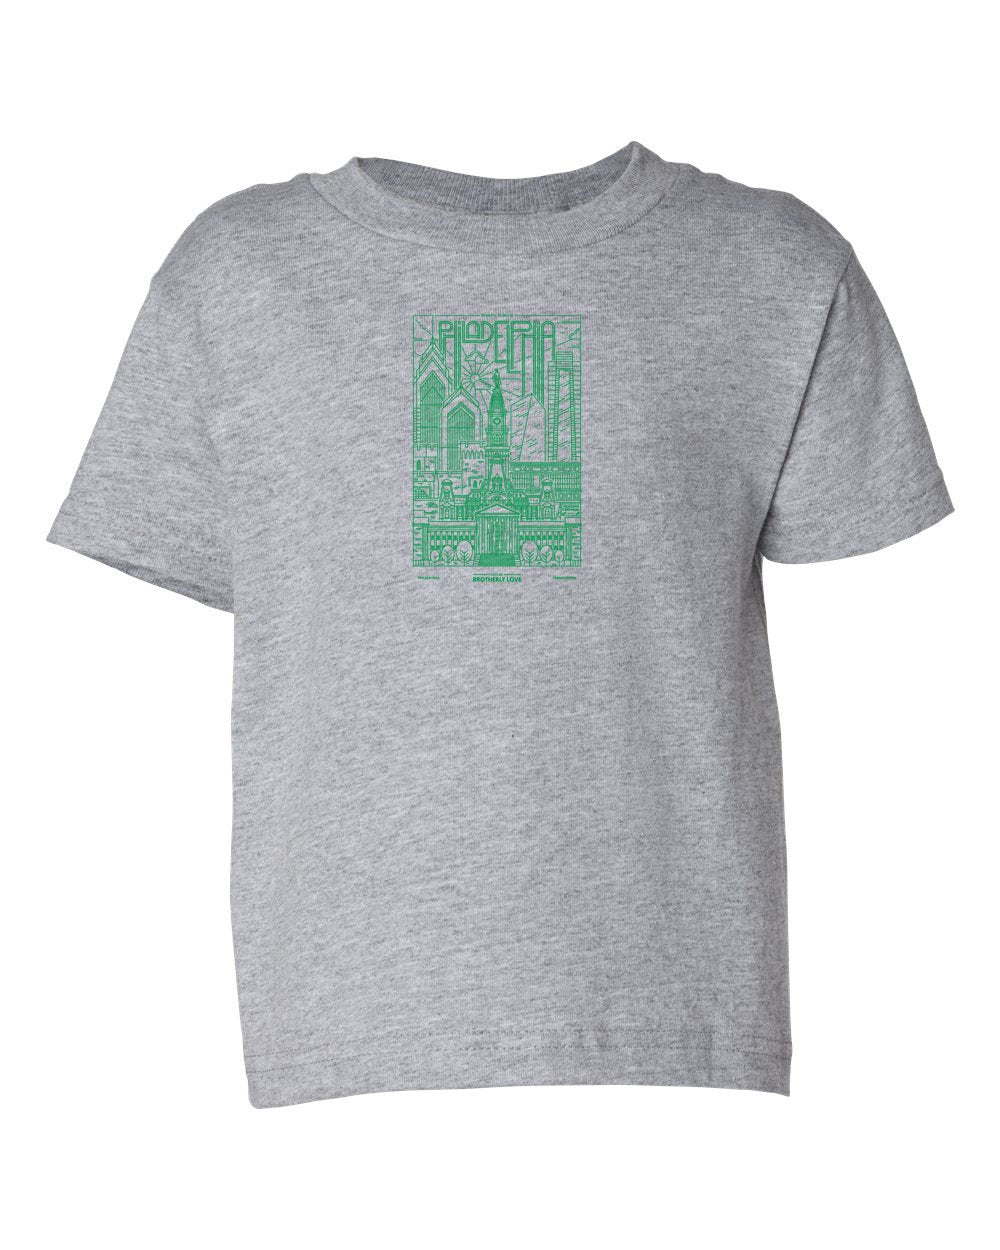 Philadelphia Skyline V2 (Green Ink) TODDLER T-Shirt